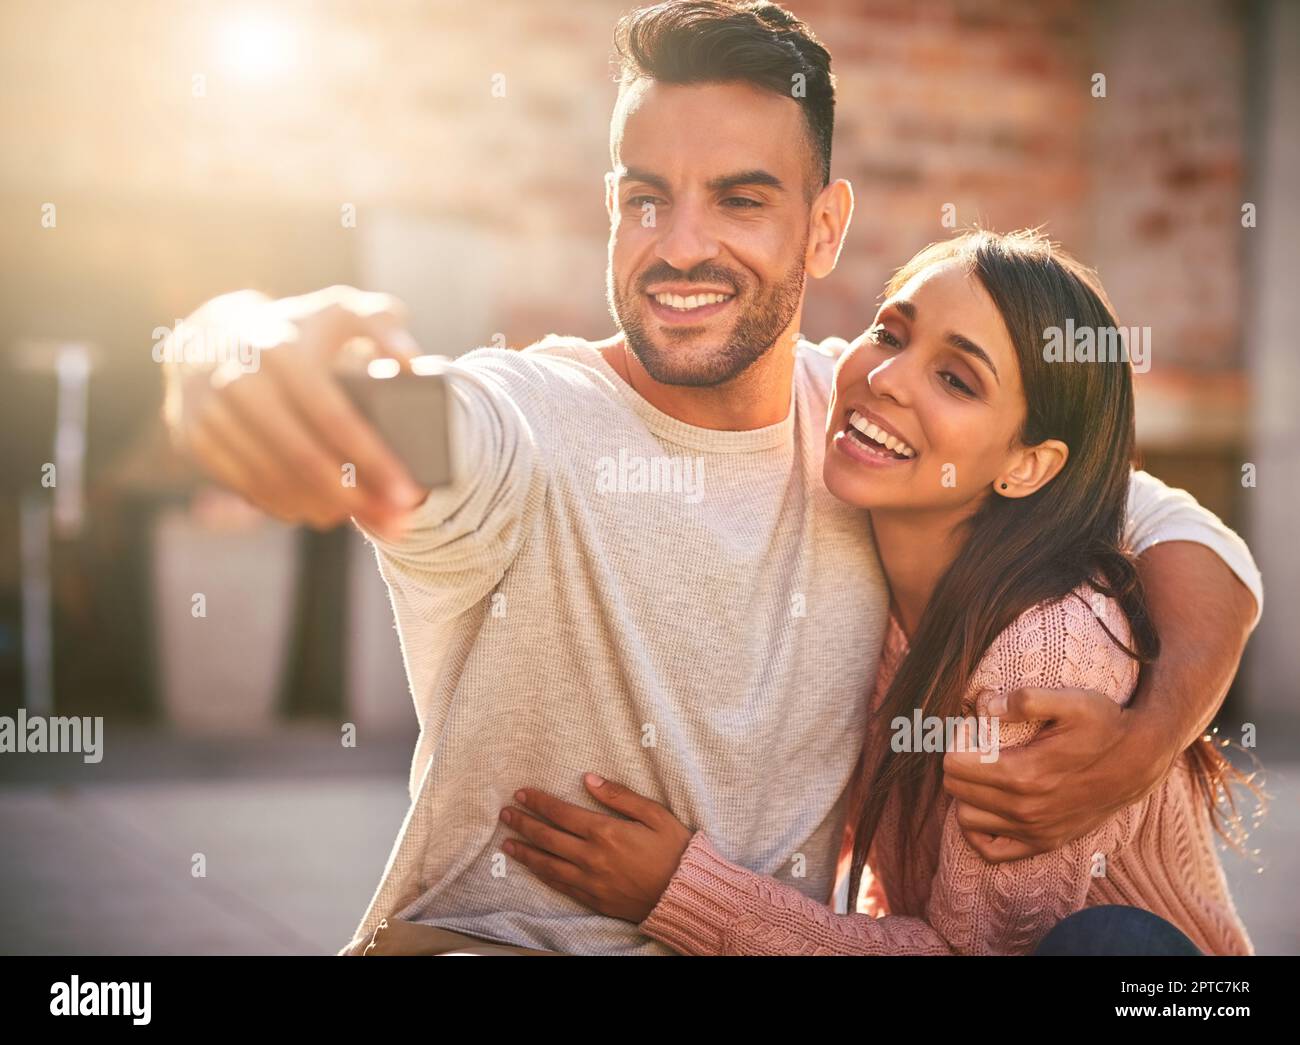 La signora principale nella mia vita. una giovane coppia felice che prende selfie insieme all'aperto Foto Stock